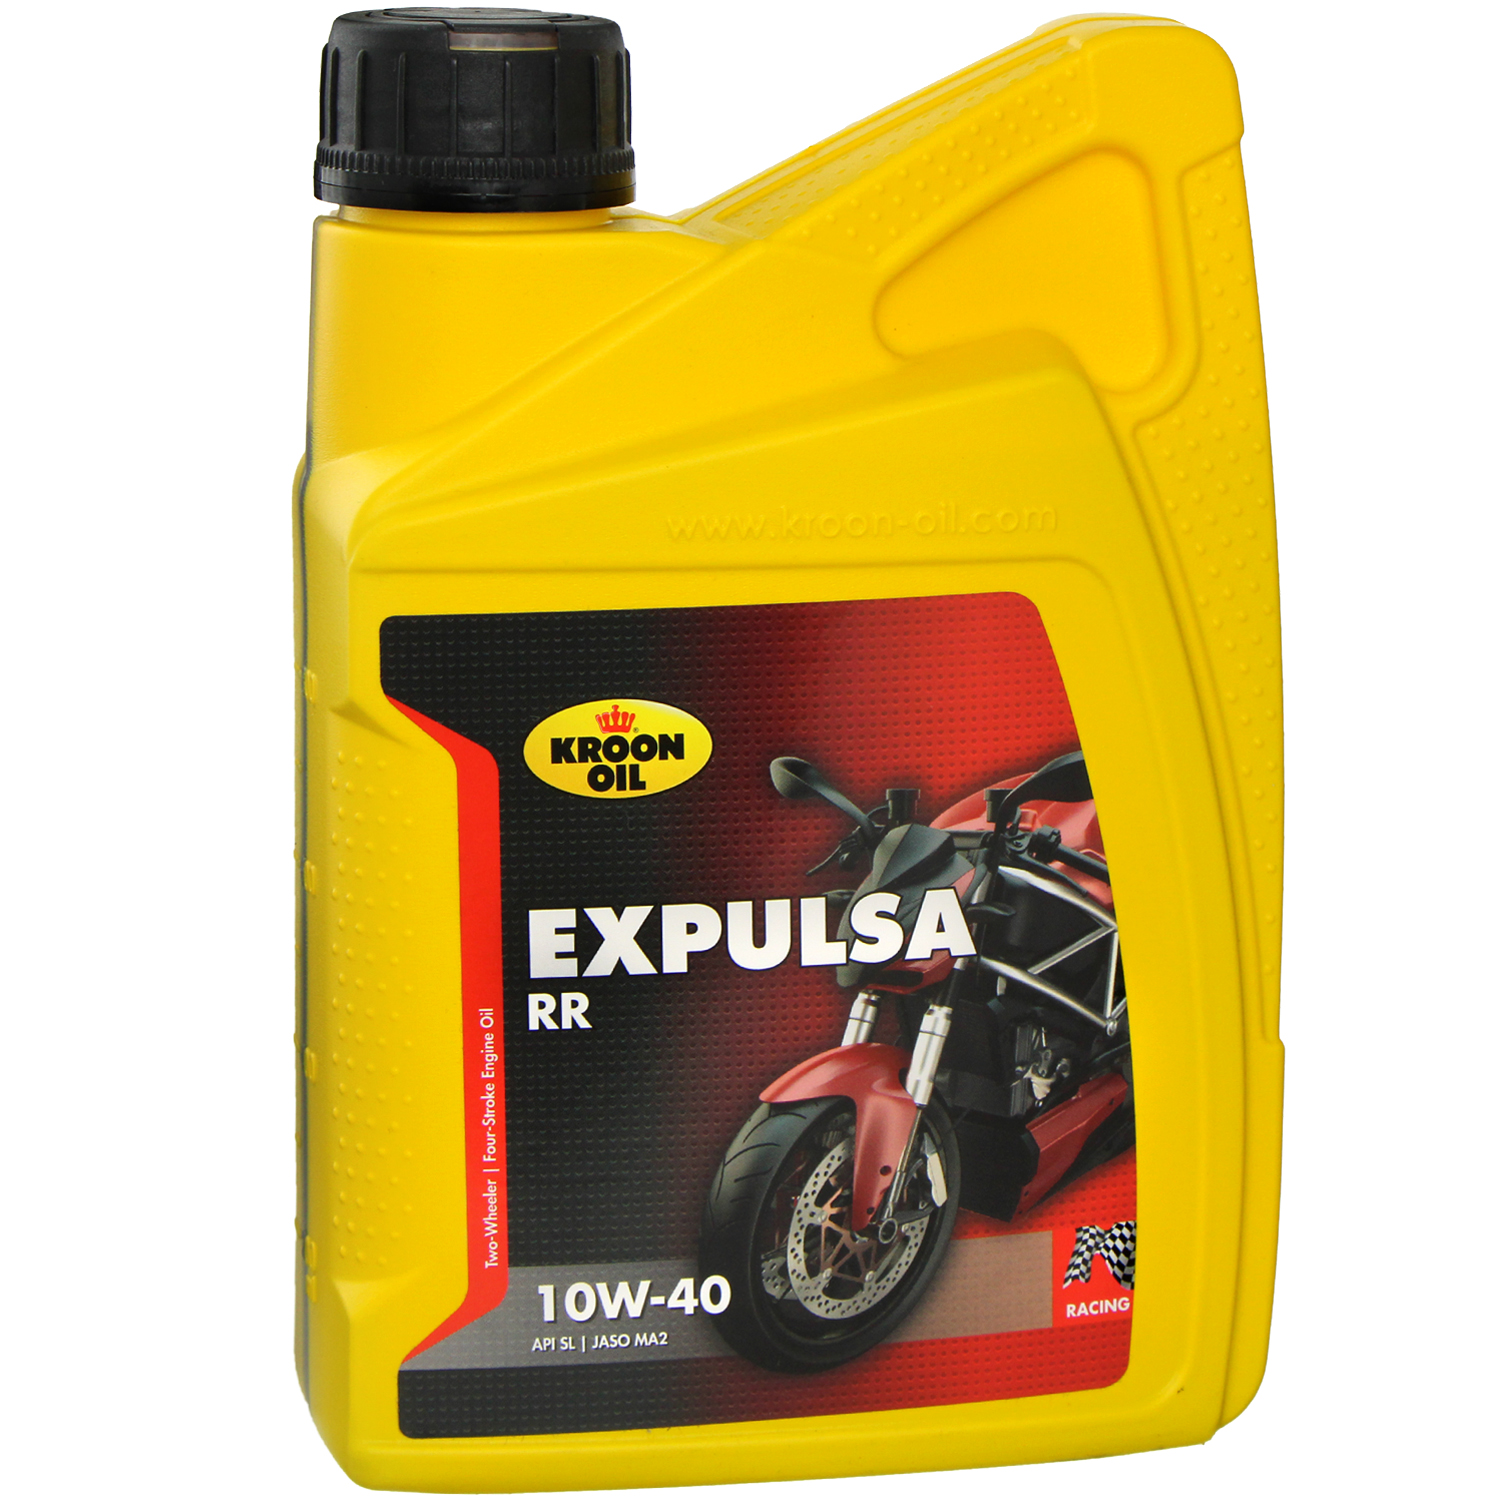 Kroon oil Expulsa 10W-40 1L